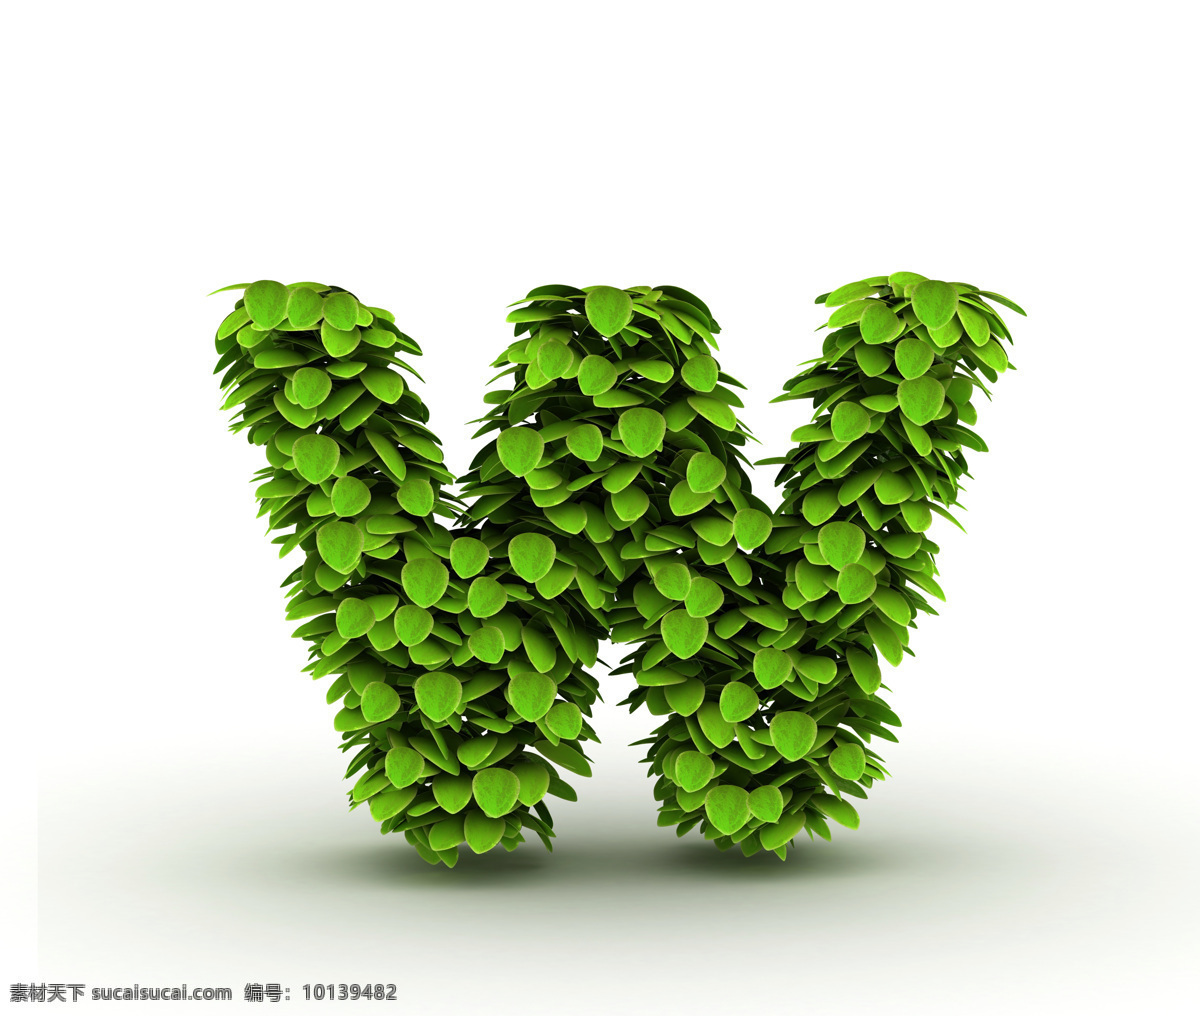 字母 w 设计素材 艺术字 字体设计 叶子 绿叶 绿色 环保 立体字 书画文字 文化艺术 白色